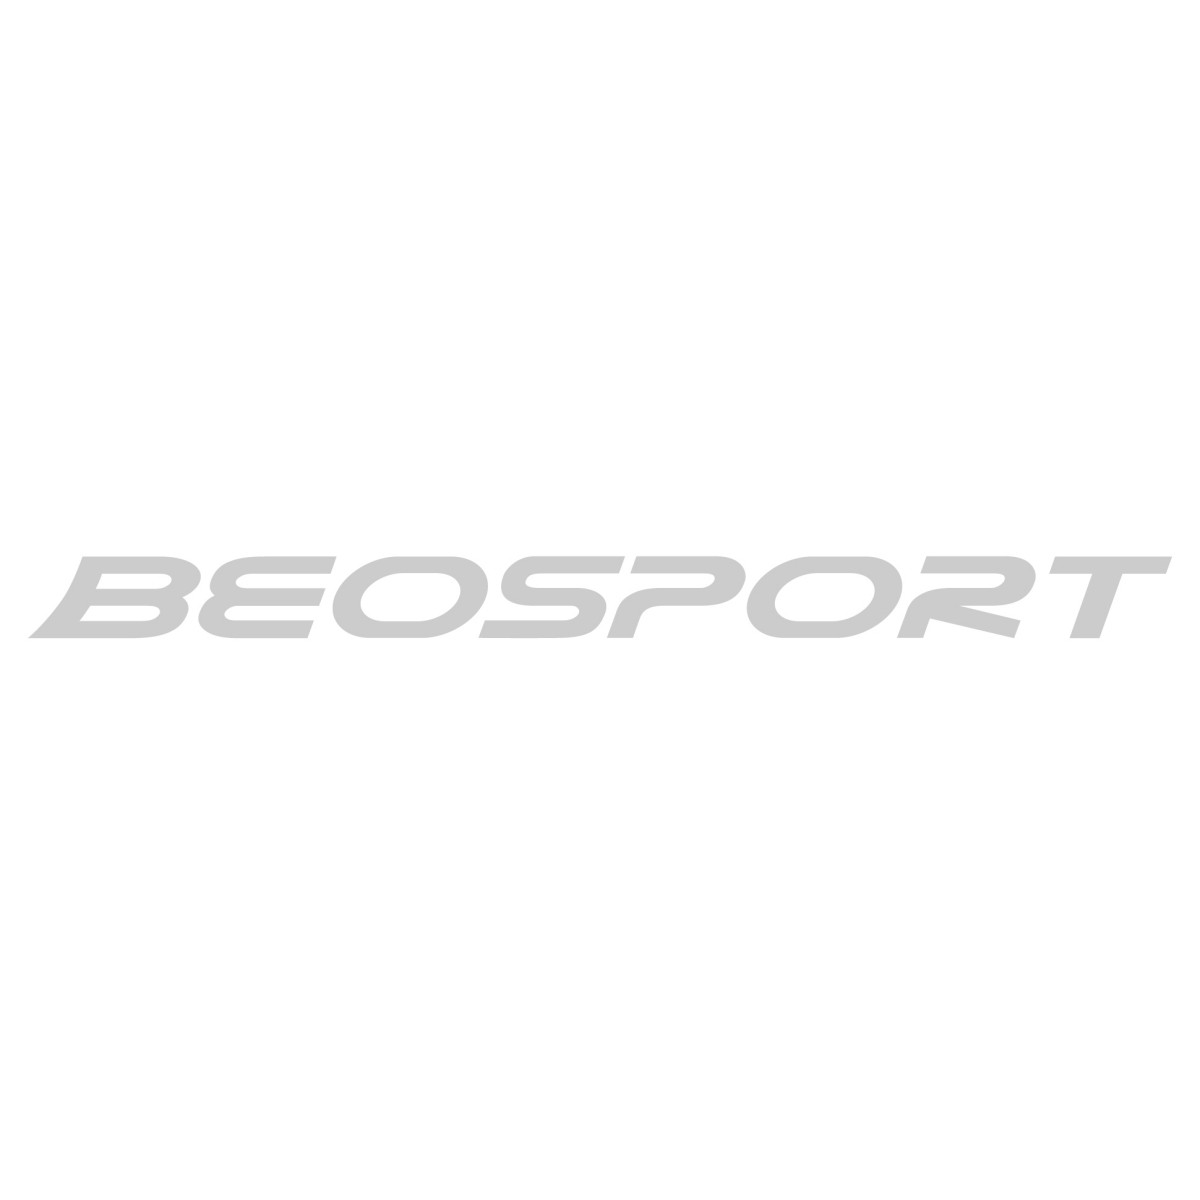 Burton | Oprema za snowboard | Snowboard daske | Beosport.com